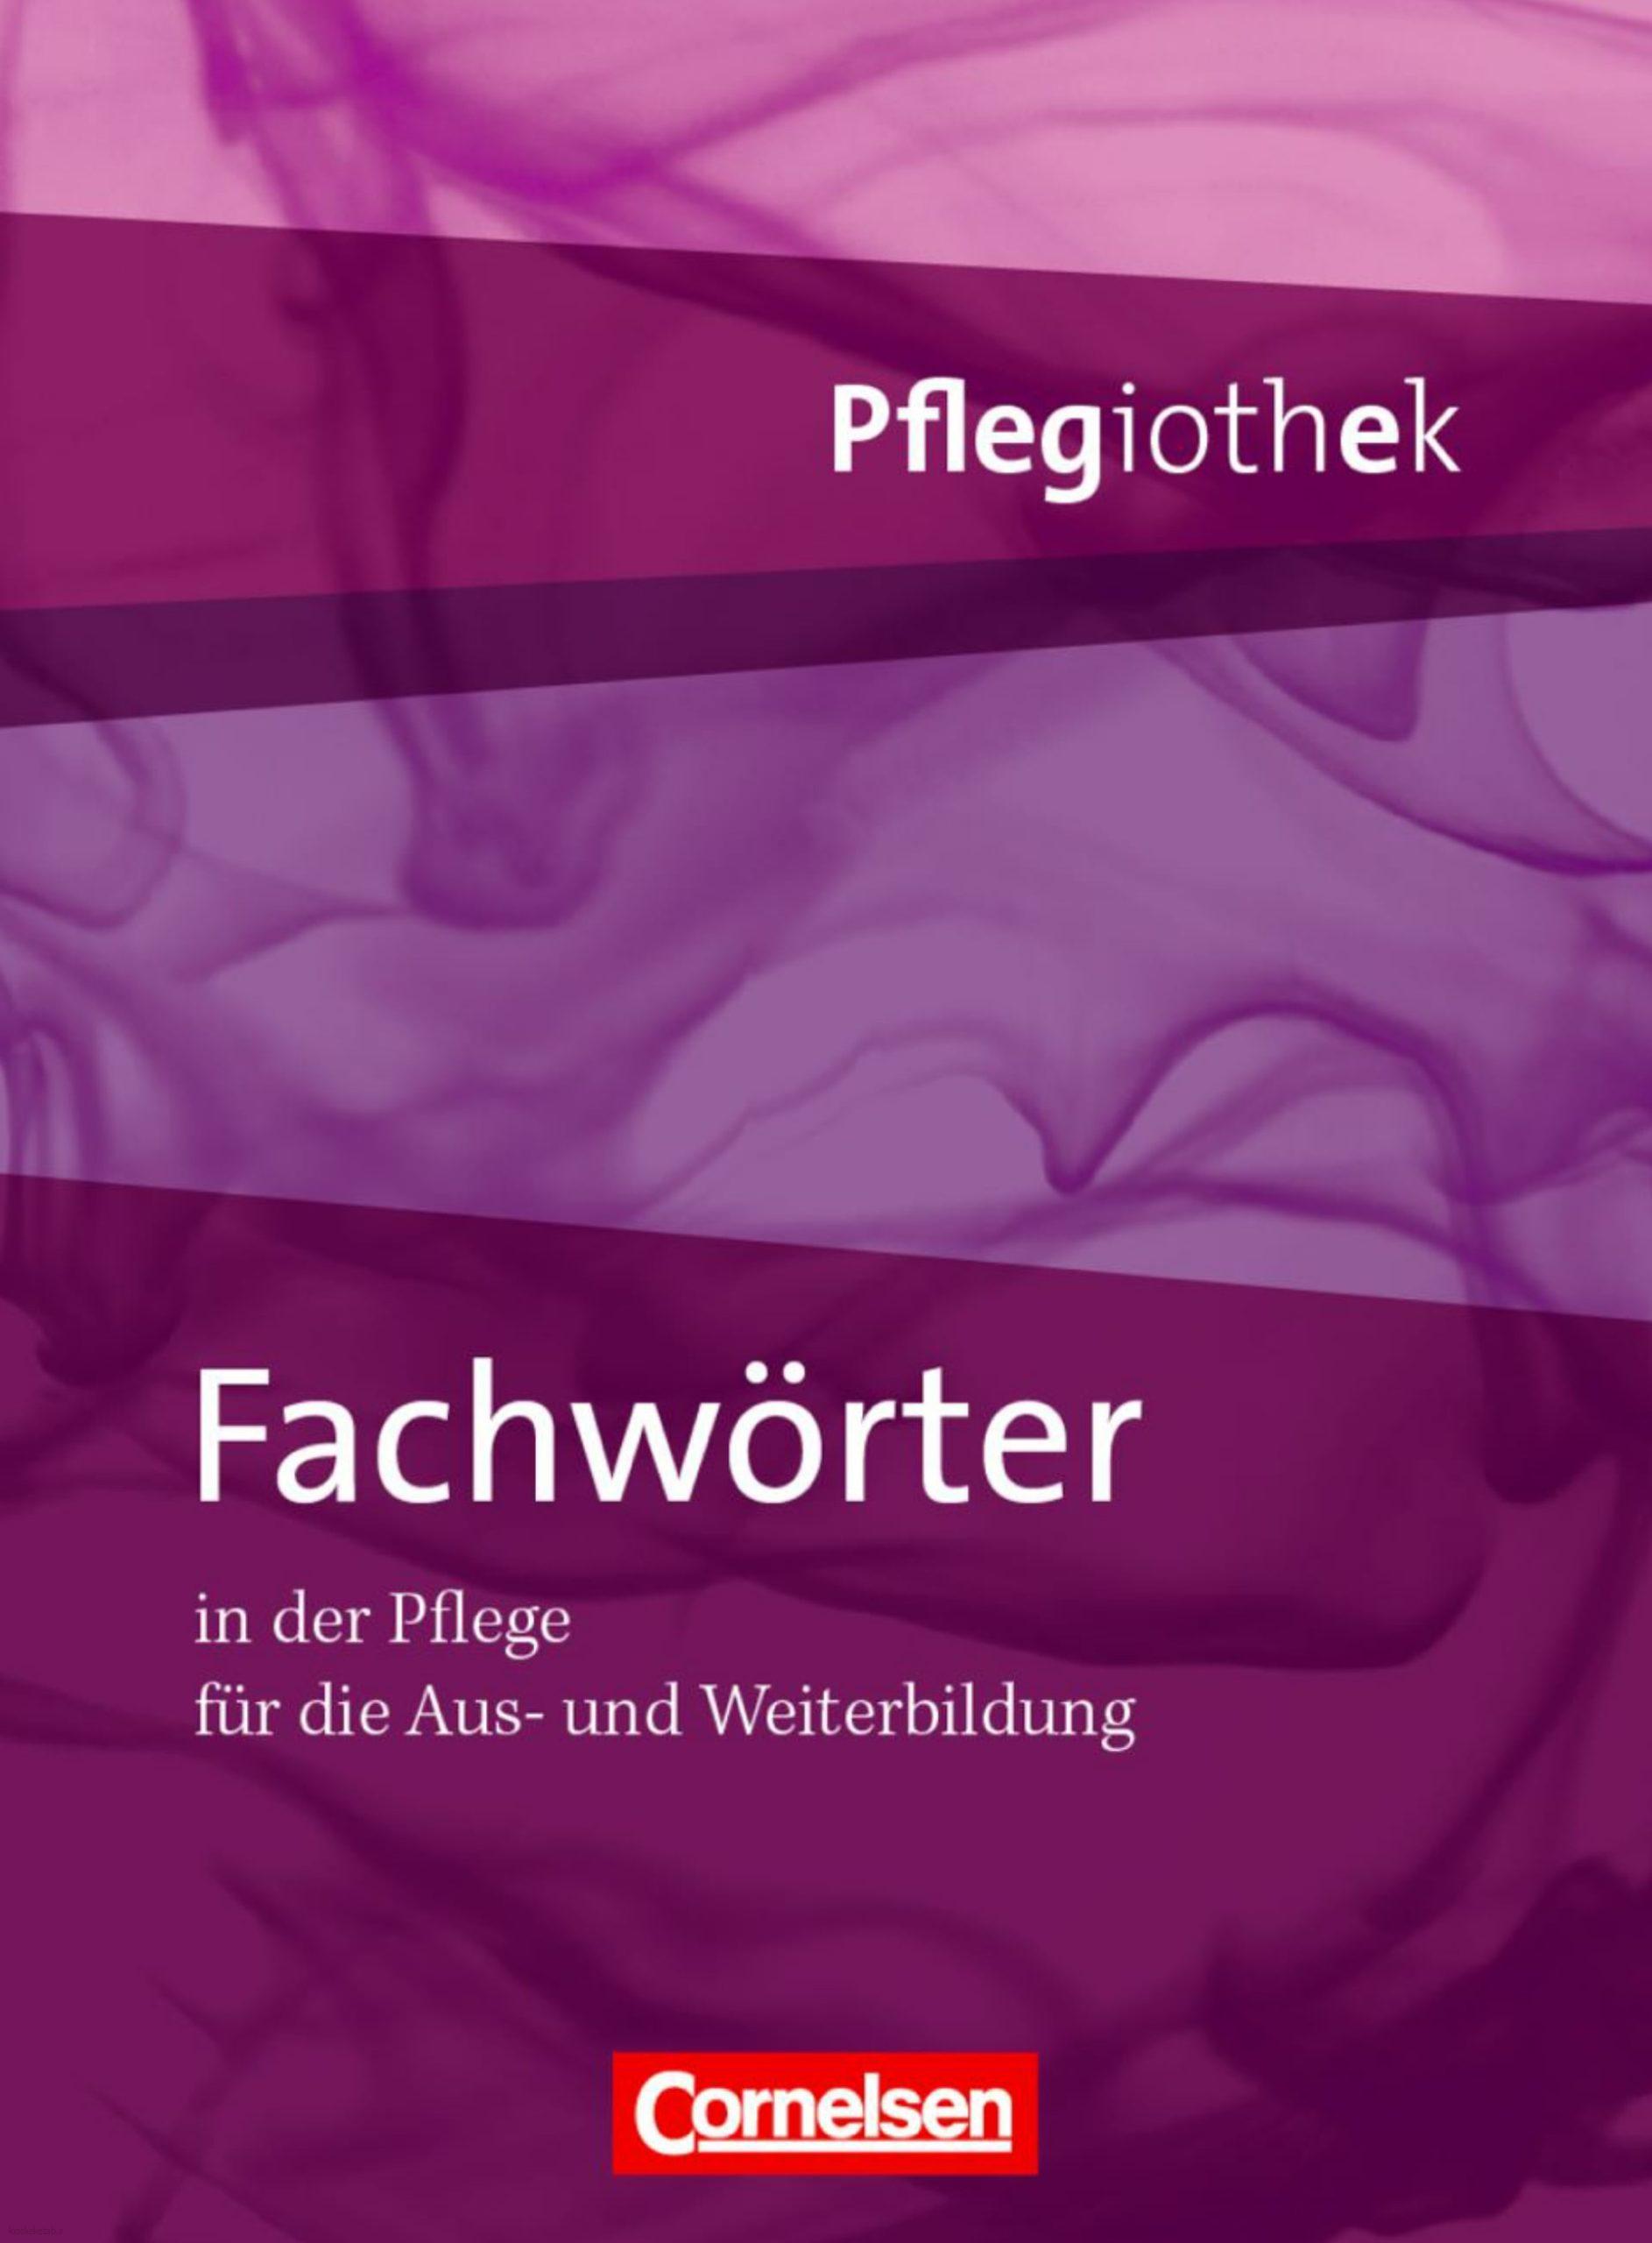 دانلود کتاب آلمانیpflegiothek fachworter